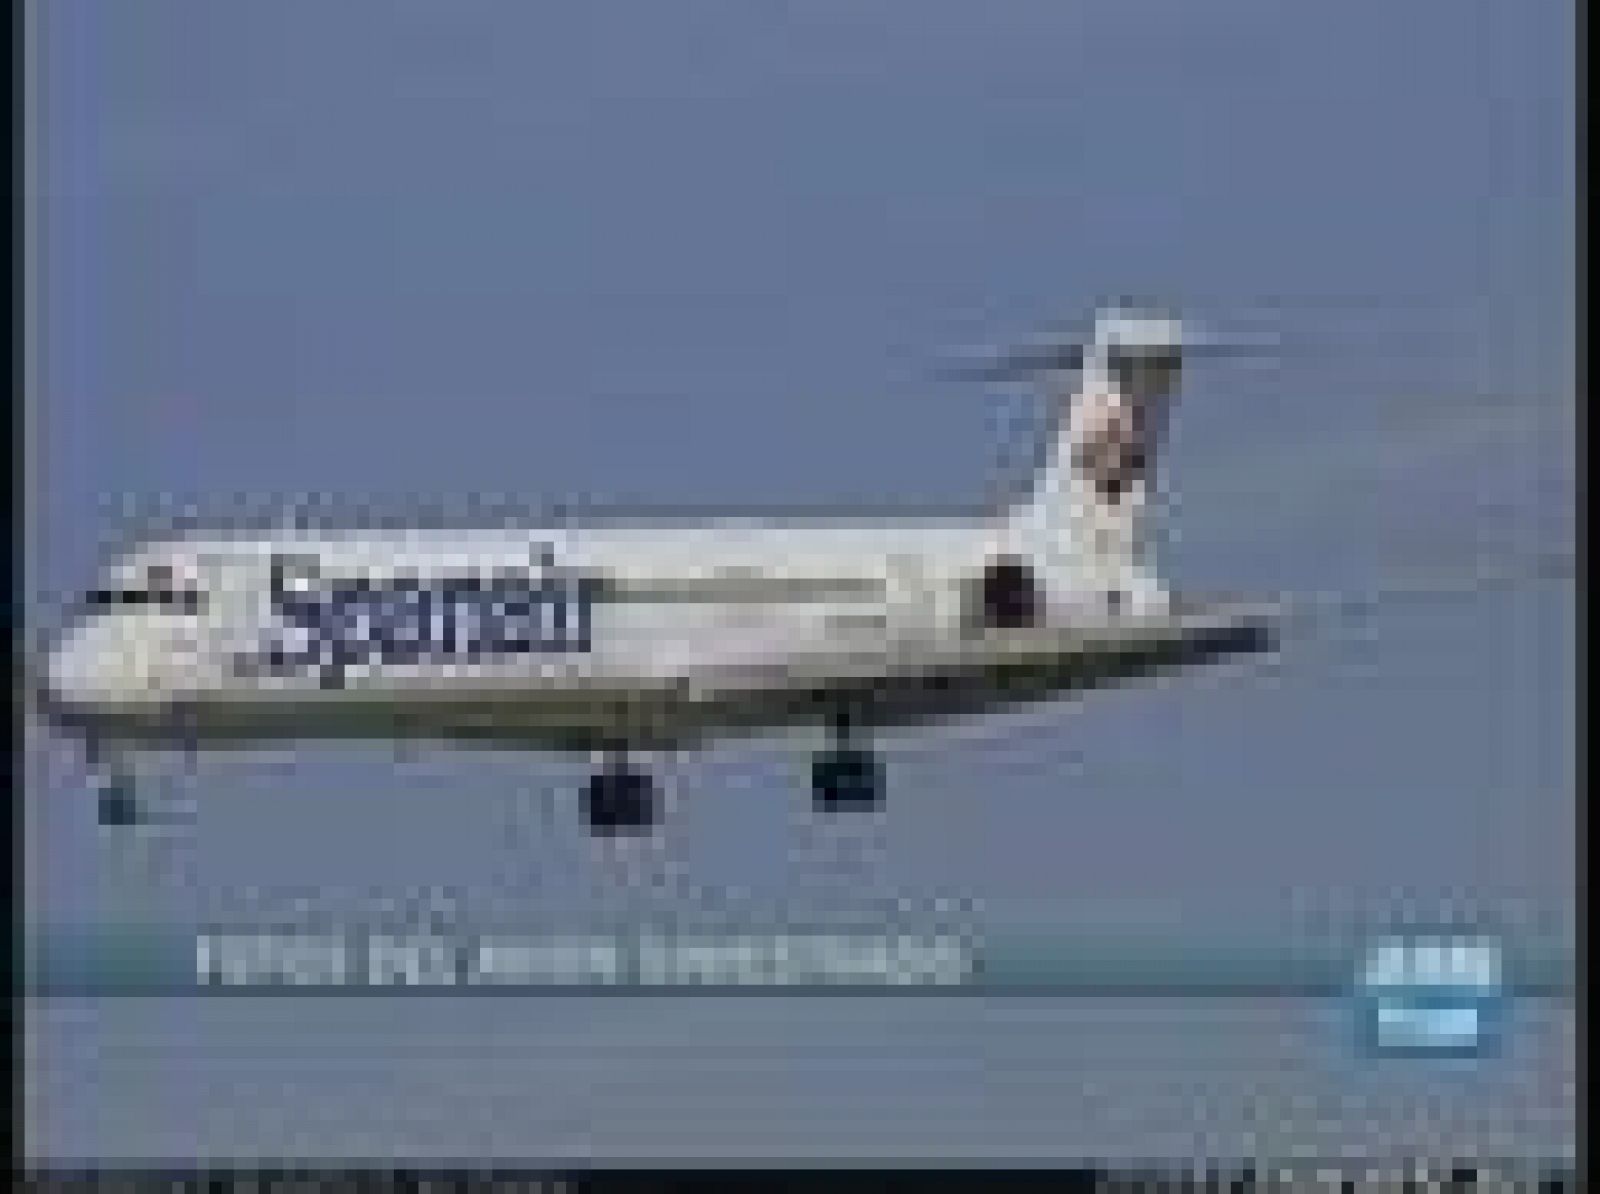 Fotos del avión de Spanair siniestrado en el aeropuerto de Barajas. Era un MD-82 de casi 15 años de antigüedad que fue adquirido por Spanair en el año 1999.